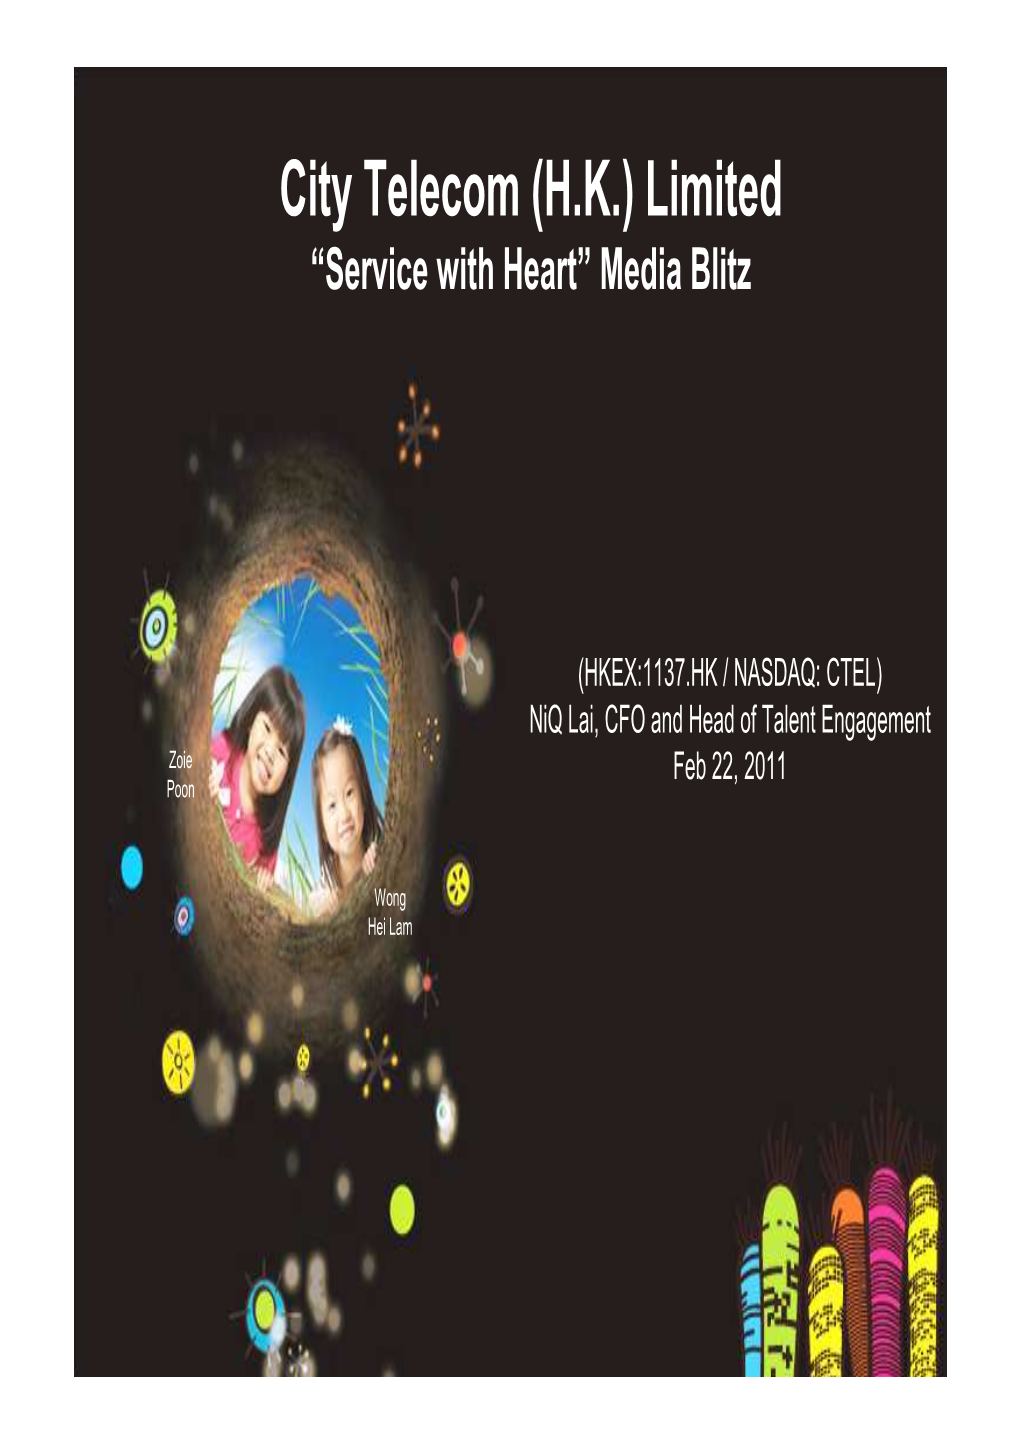 City Telecom (H.K.) Limited “Service with Heart” Media Blitz